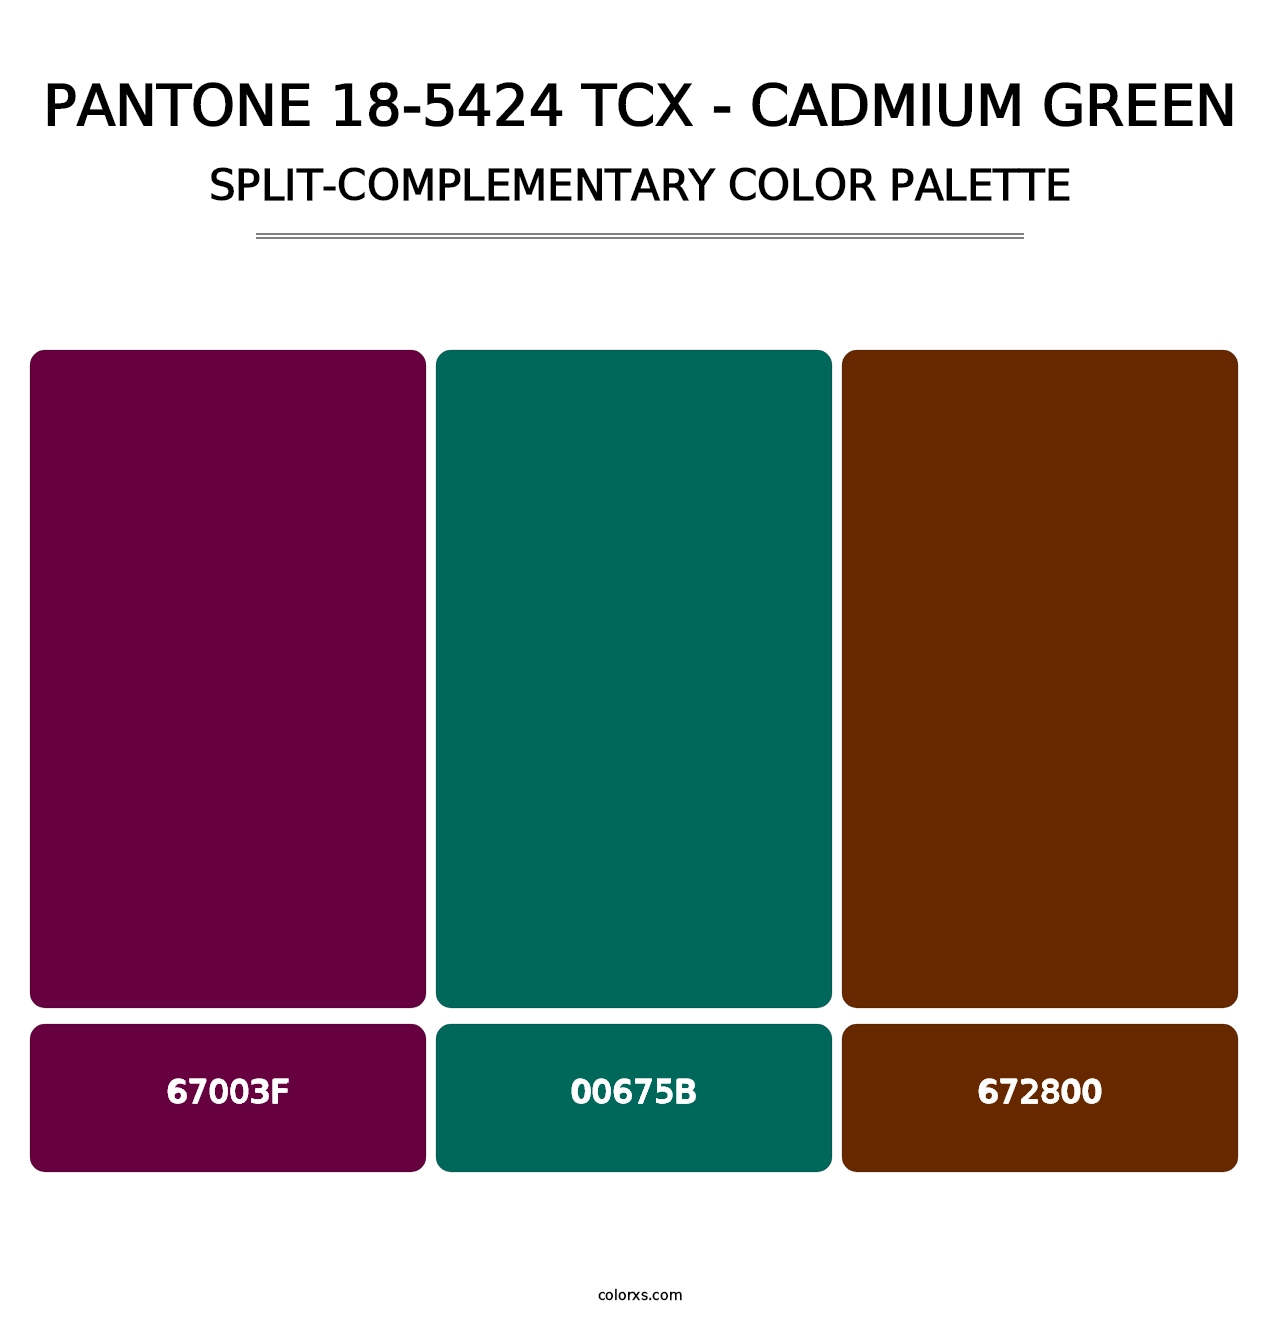 PANTONE 18-5424 TCX - Cadmium Green - Split-Complementary Color Palette